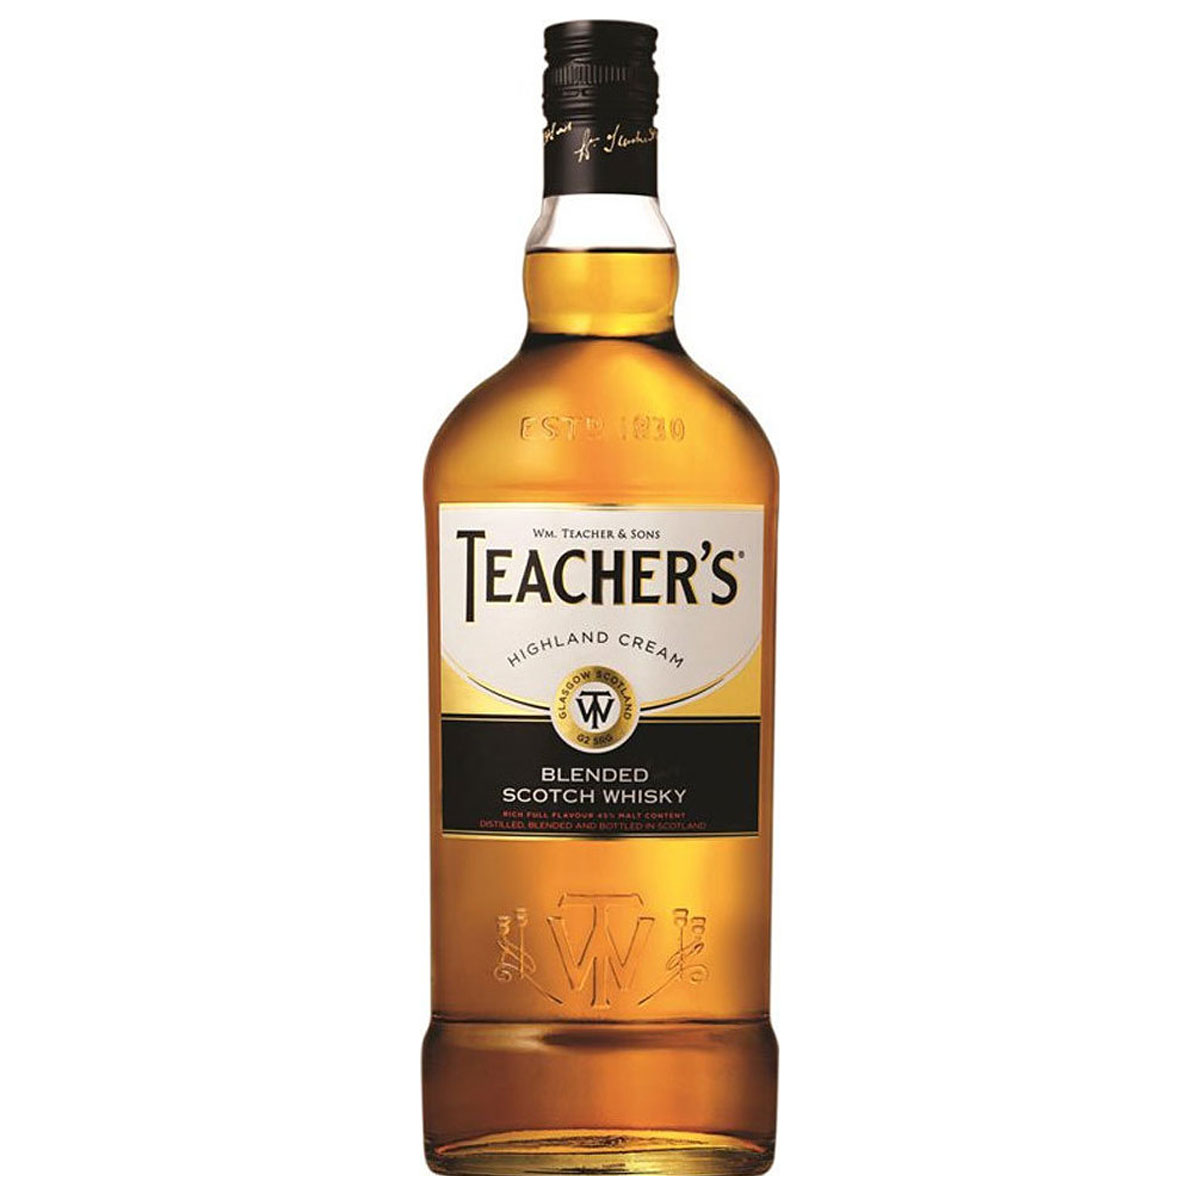 a bottle of teachers whisky